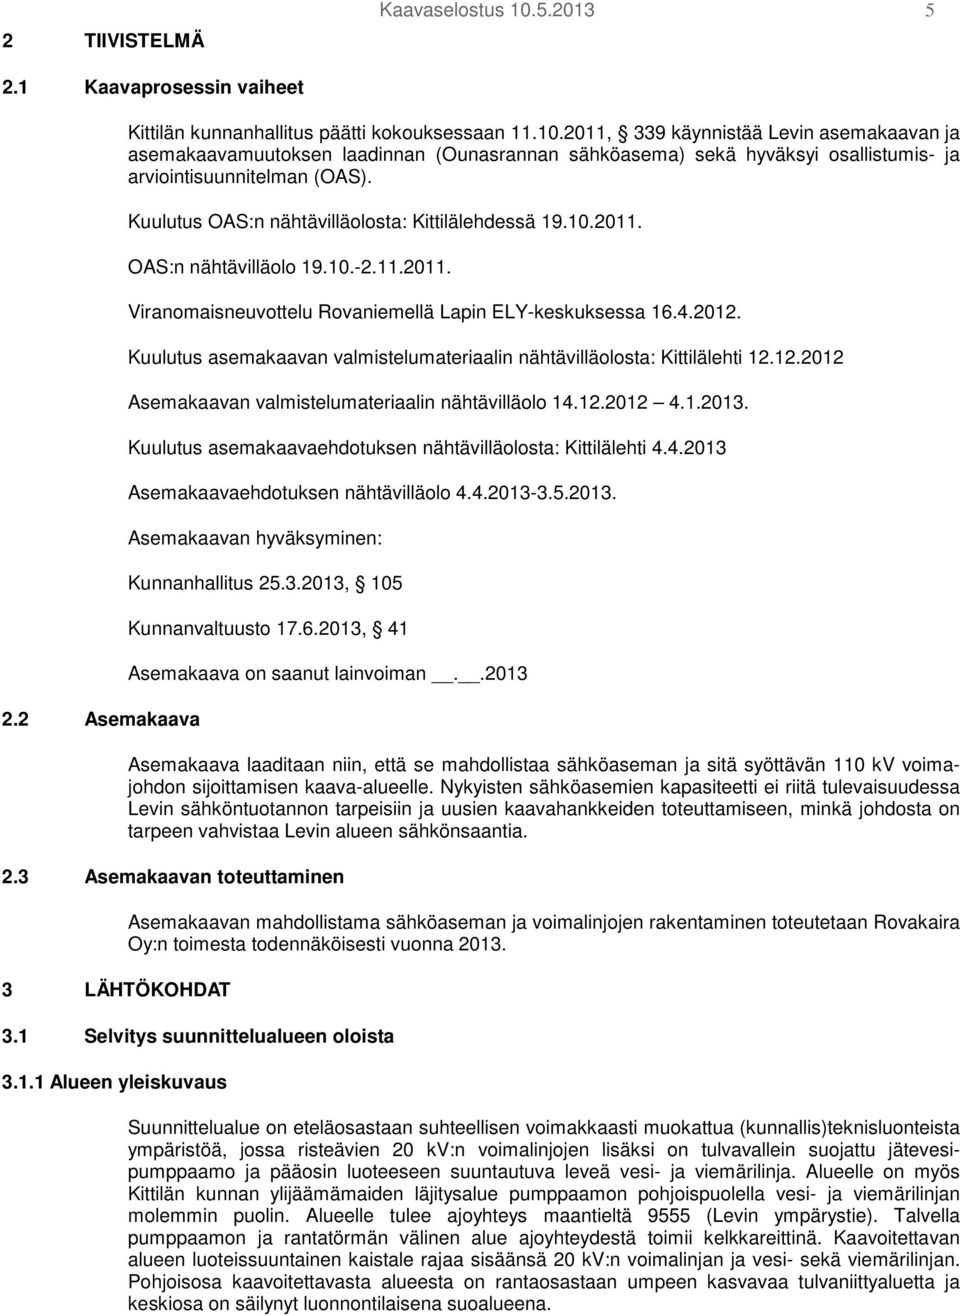 Kuulutus asemakaavan valmistelumateriaalin nähtävilläolosta: Kittilälehti 12.12.2012 Asemakaavan valmistelumateriaalin nähtävilläolo 14.12.2012 4.1.2013.